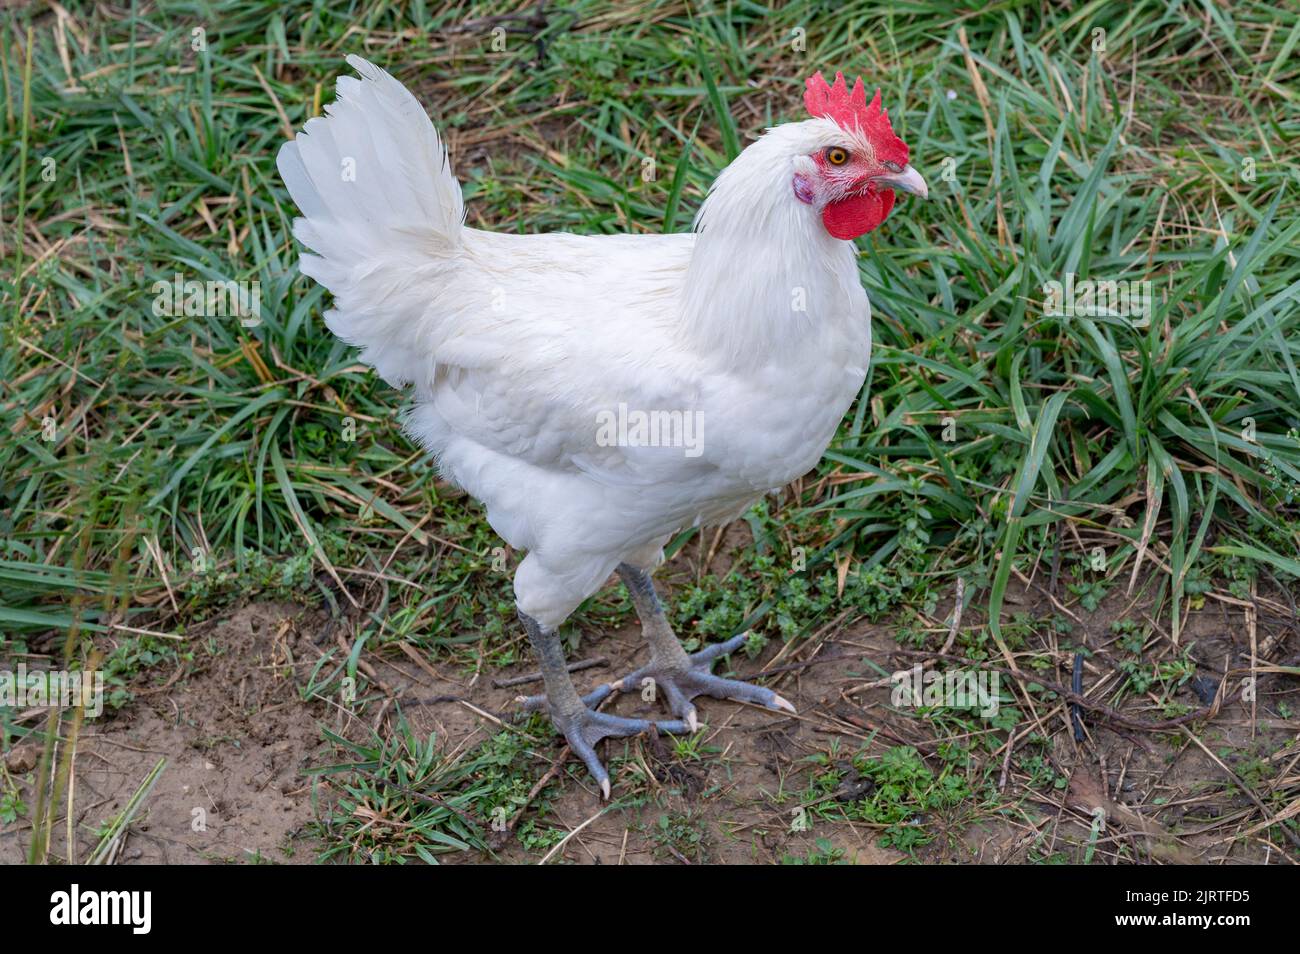 Blu, rosso, bianco: Il pollo di Bresse presenta con orgoglio i colori nazionali della Francia ed è quindi altamente stimato come il pollame nazionale francese Foto Stock